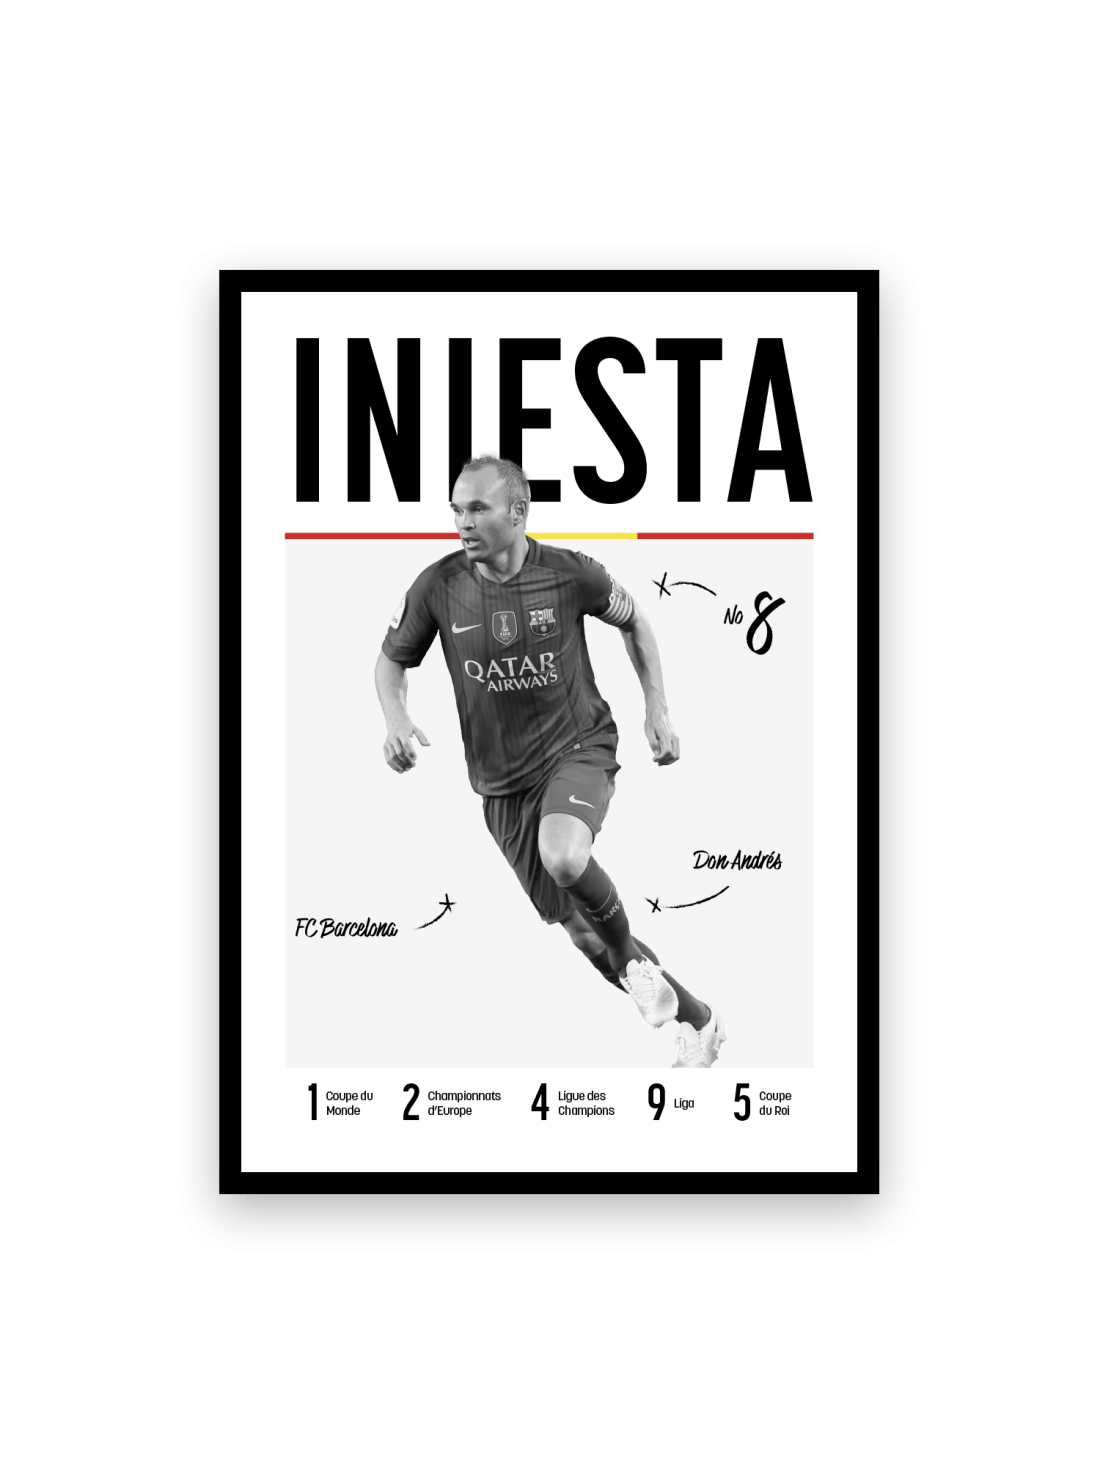 Iniesta - Les légendes du Foot